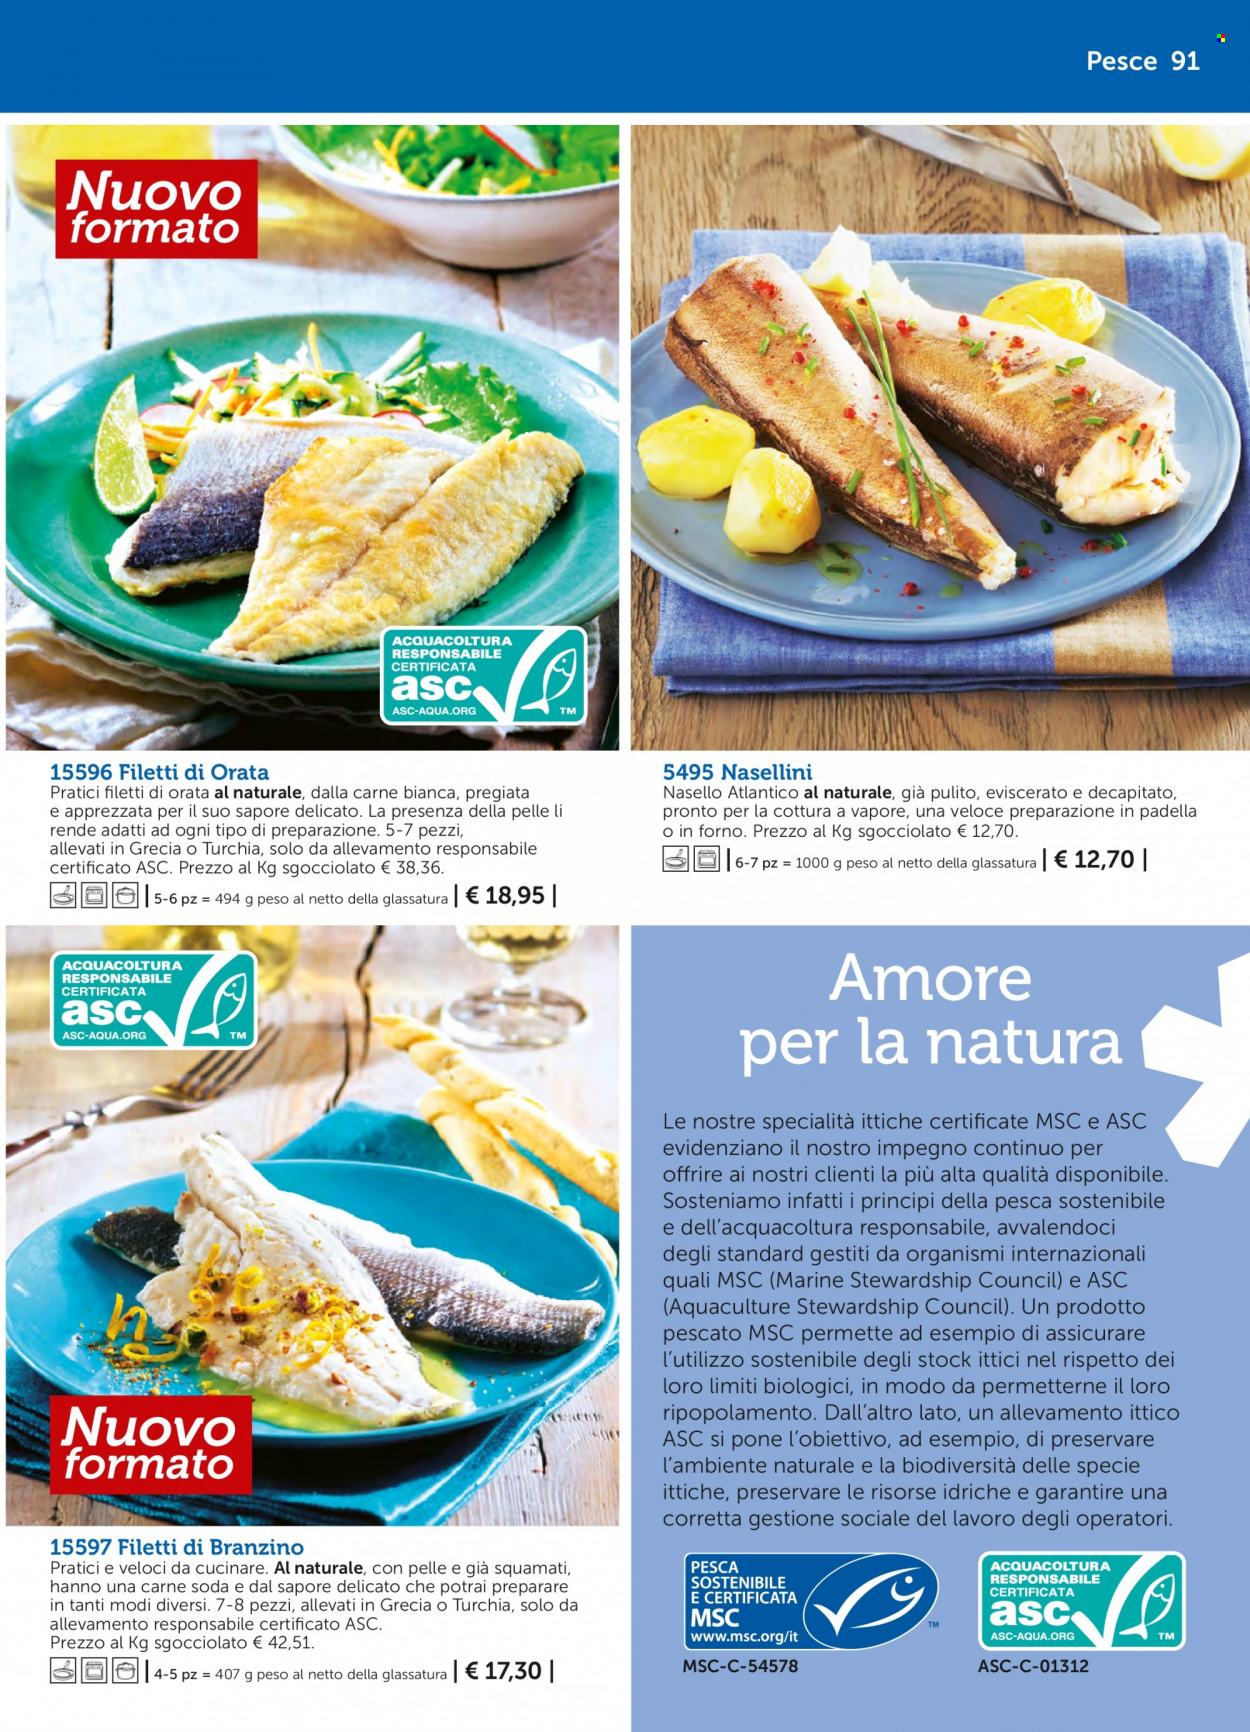 thumbnail - Volantino Bofrost - Prodotti in offerta - branzino, spigola, pesce, orata, nasello, filetti di branzino. Pagina 91.